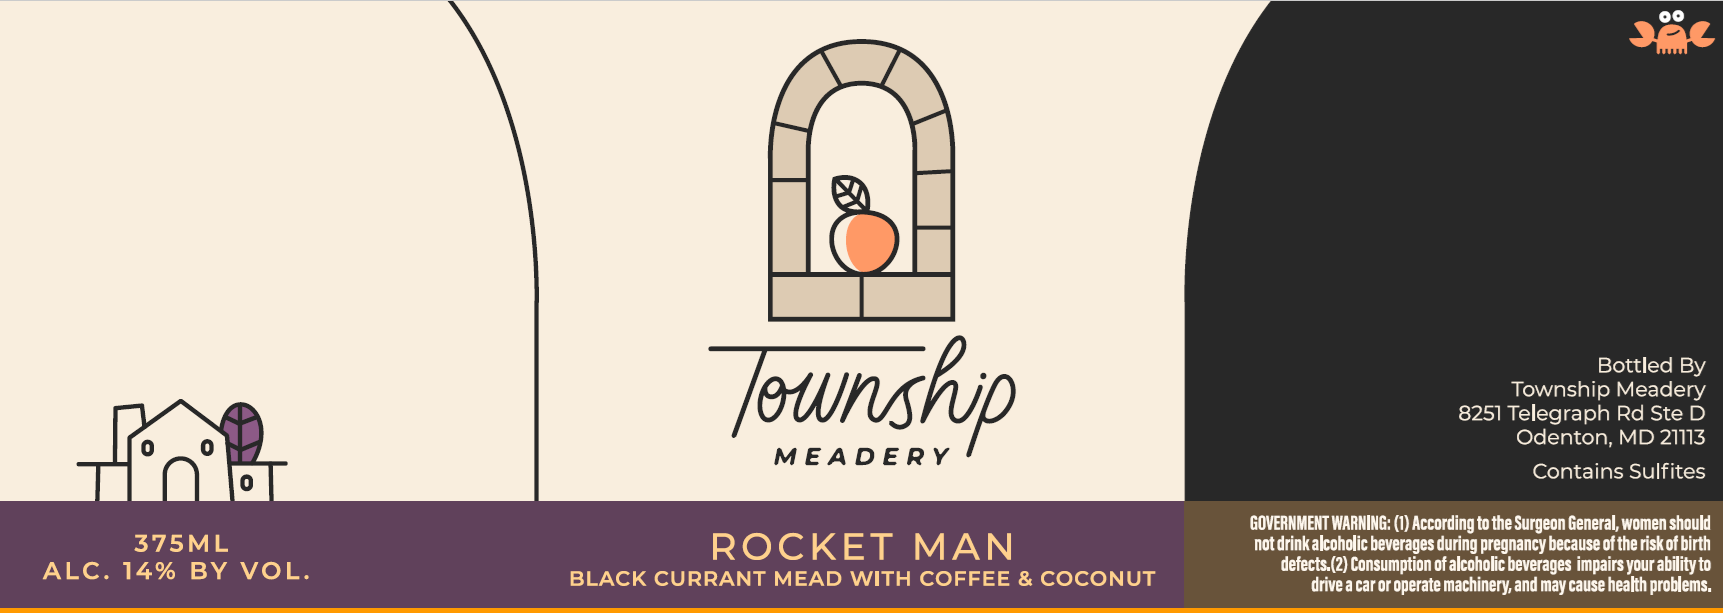 Township Meadery - Rocket Man 375ml Bottle